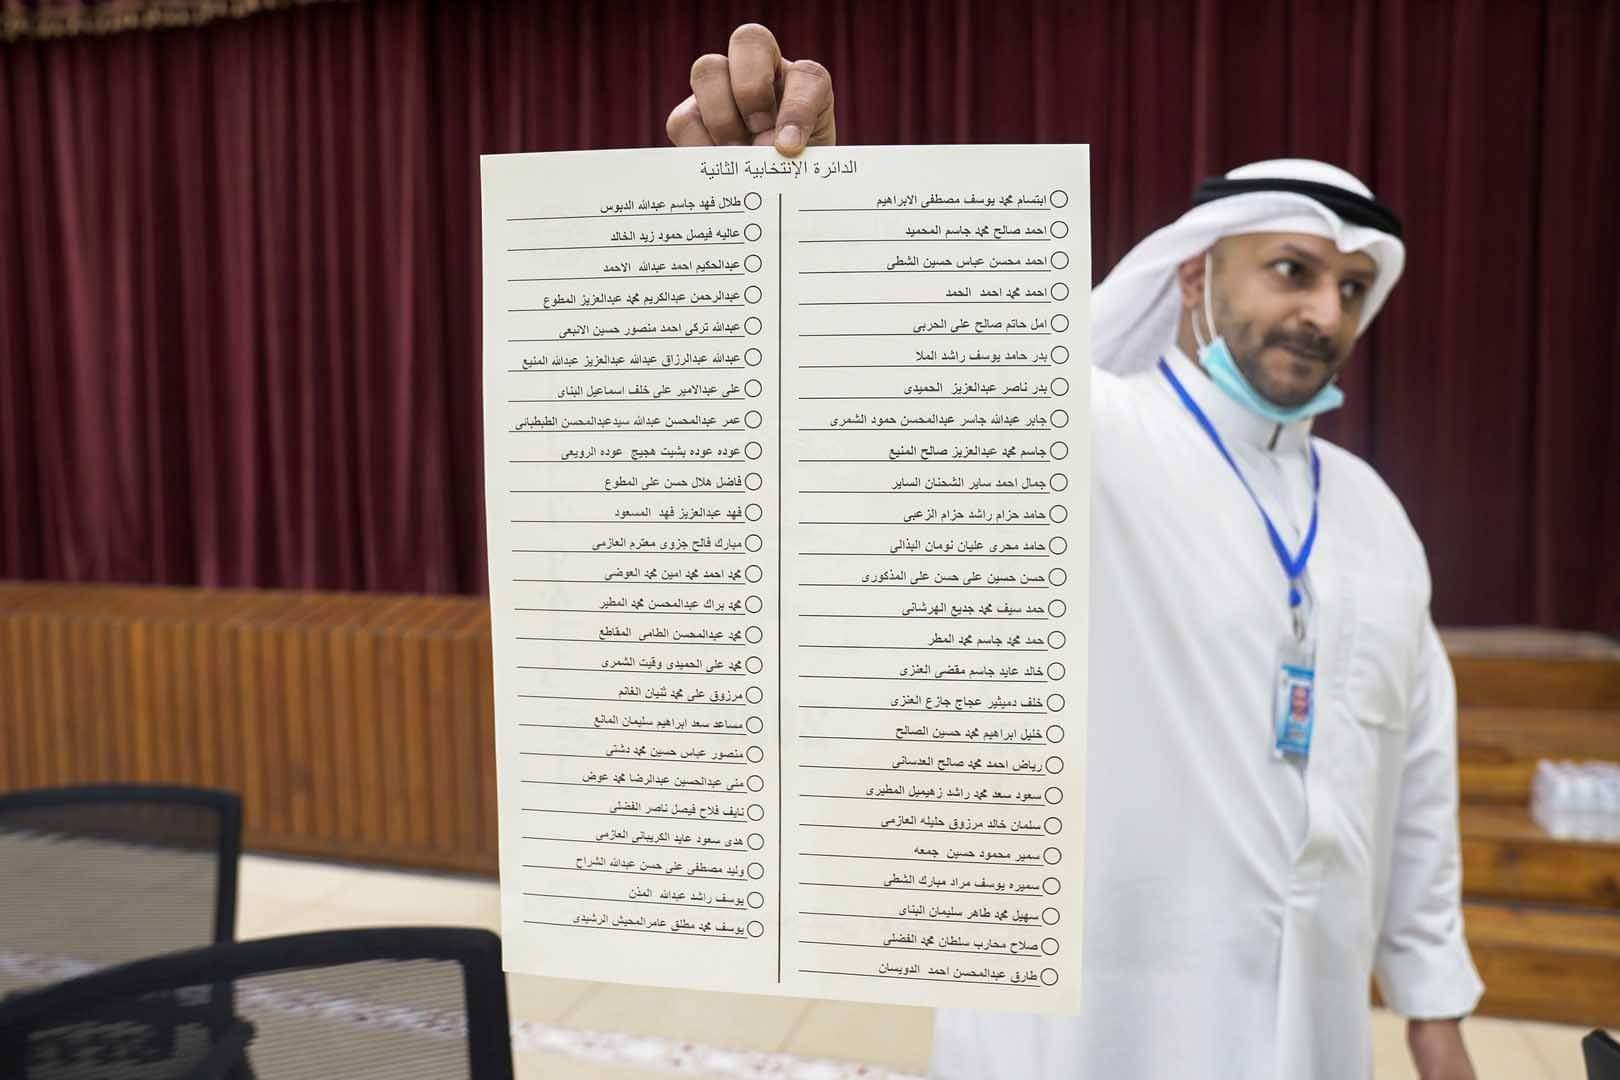 المعارضة الكويتية تفوز بنصف مقاعد مجلس الأمة و30 نائبا تحت سن الـ 45 عاما